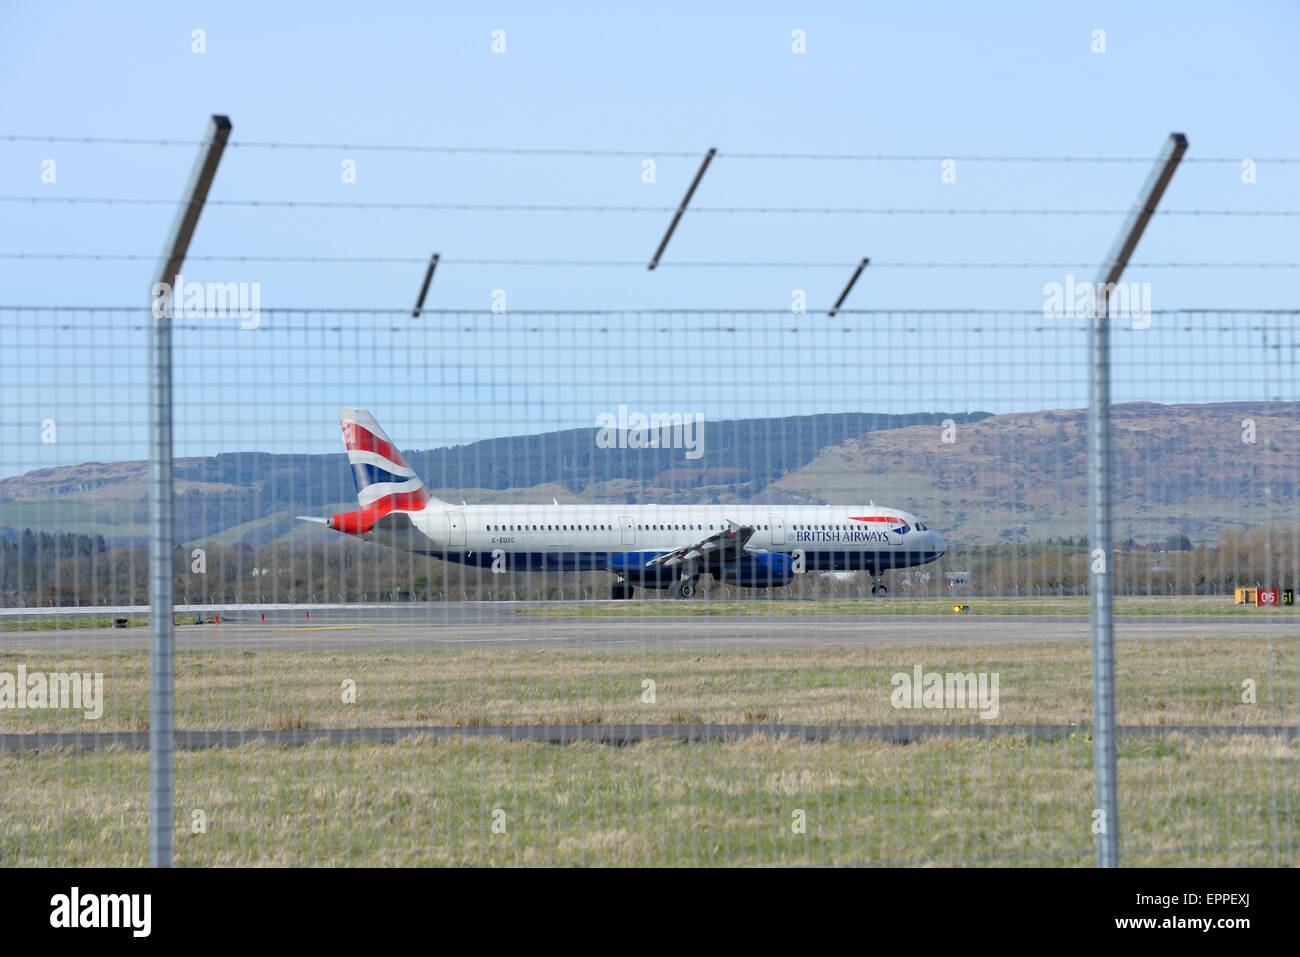 Un avion de British Airways se prépare au décollage Vue de derrière le mur de sécurité à l'aéroport international de Glasgow, Ecosse Banque D'Images